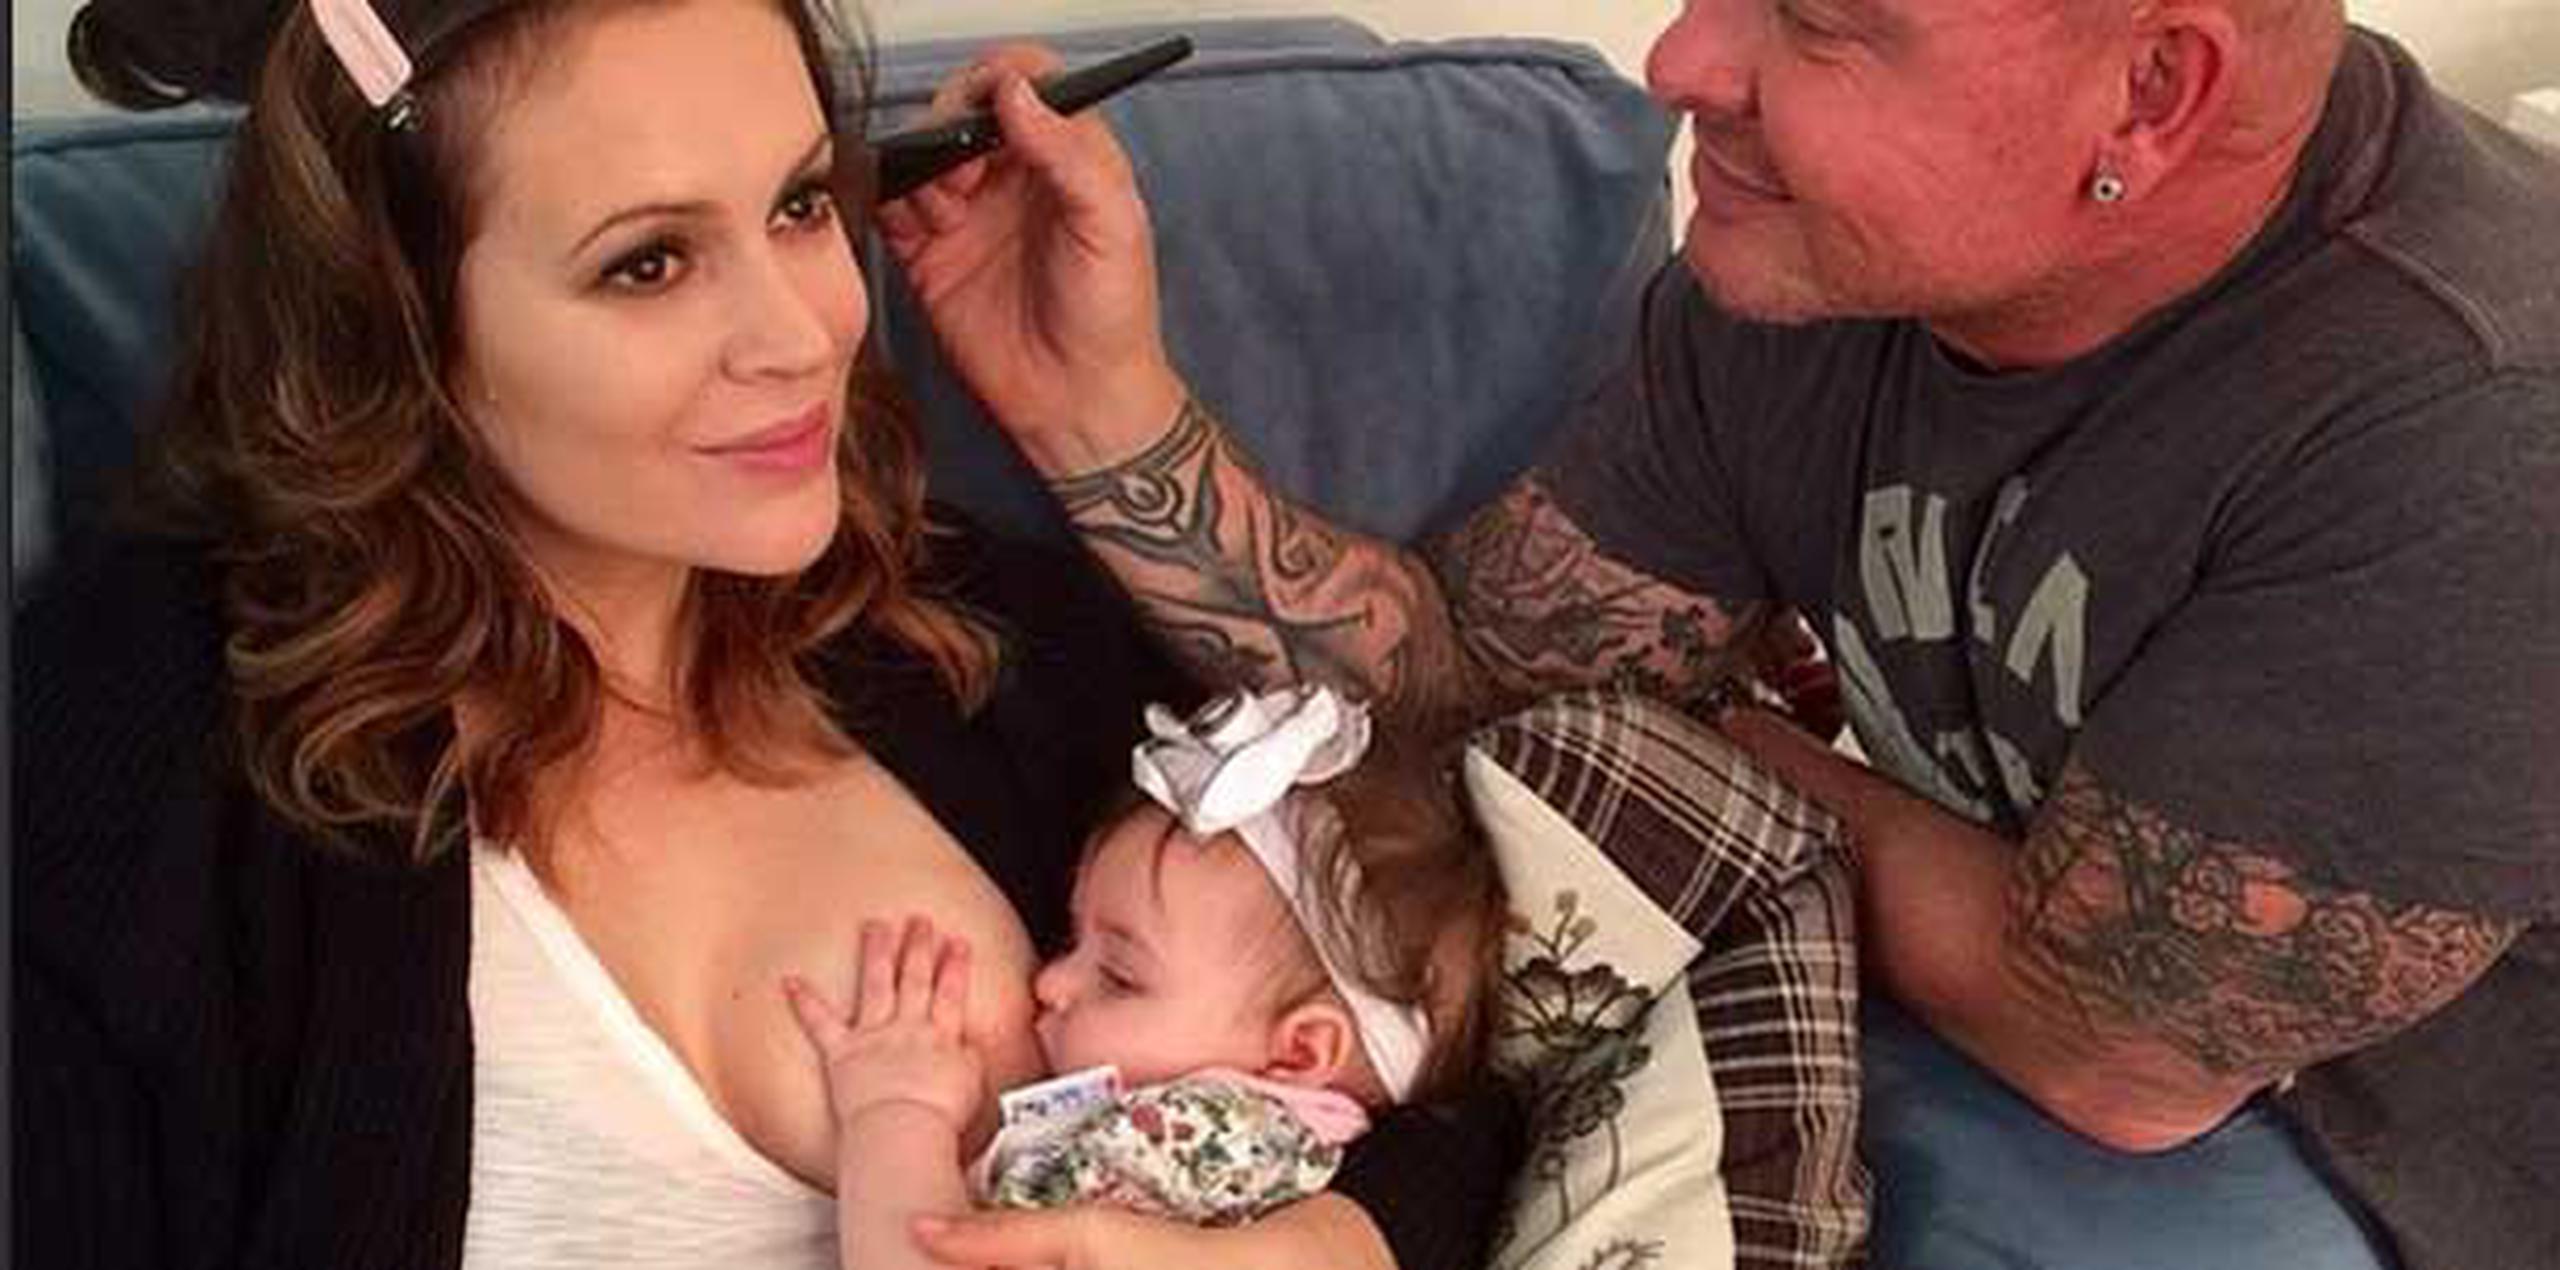 Alysa Milano acostumbra compartir fotos mientras amamanta a su bebé. (milano_alyssa/Instagram)